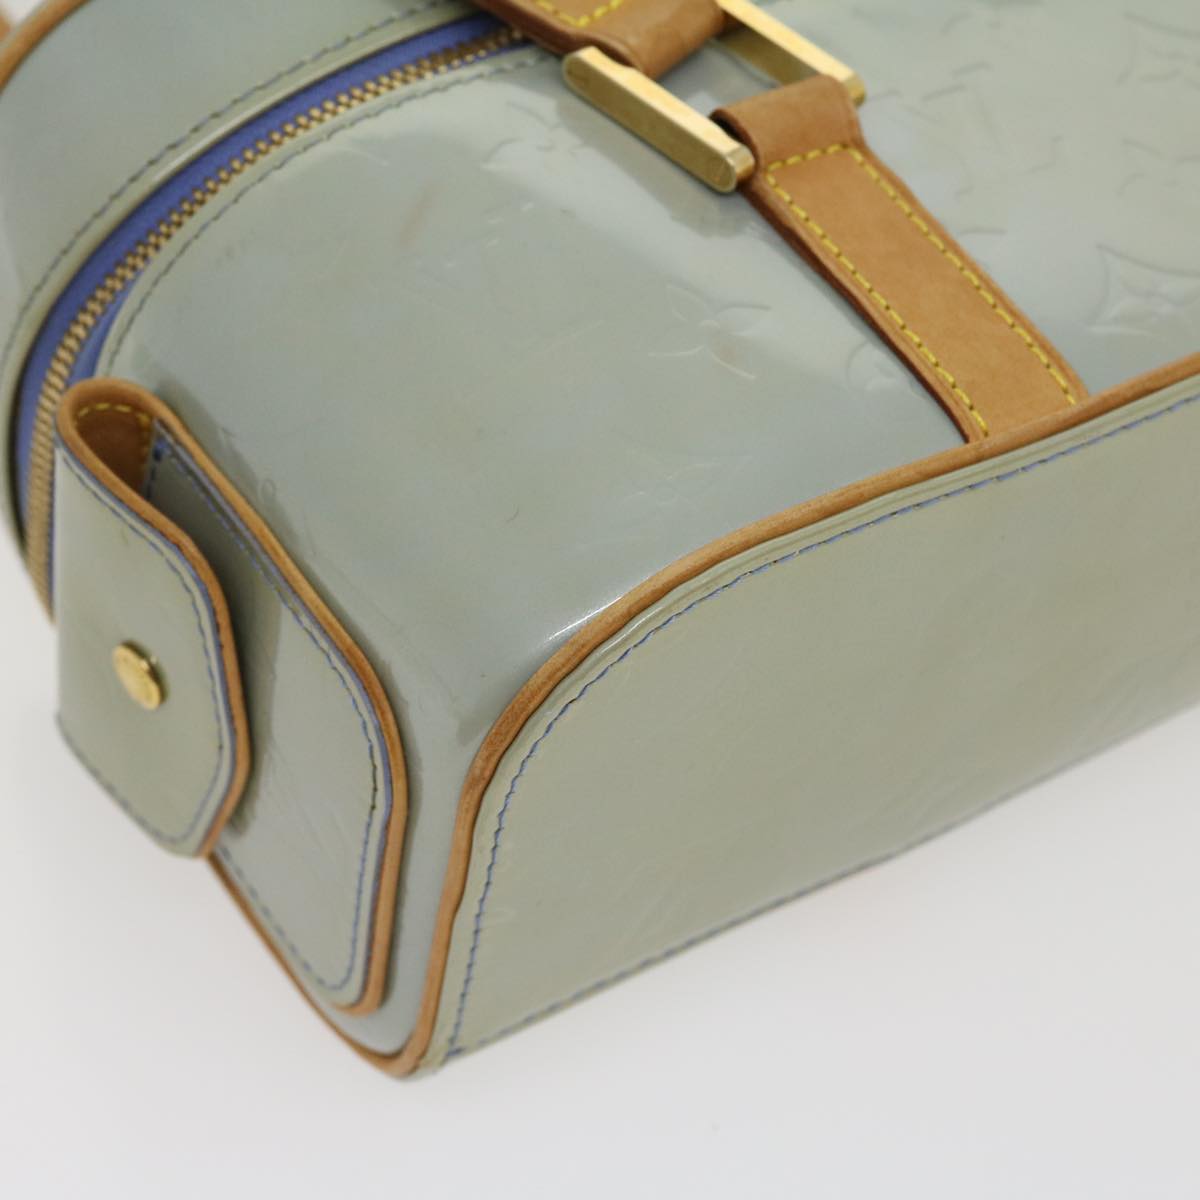 Louis Vuitton Light Blue Patent leather Sullivan handbag bag